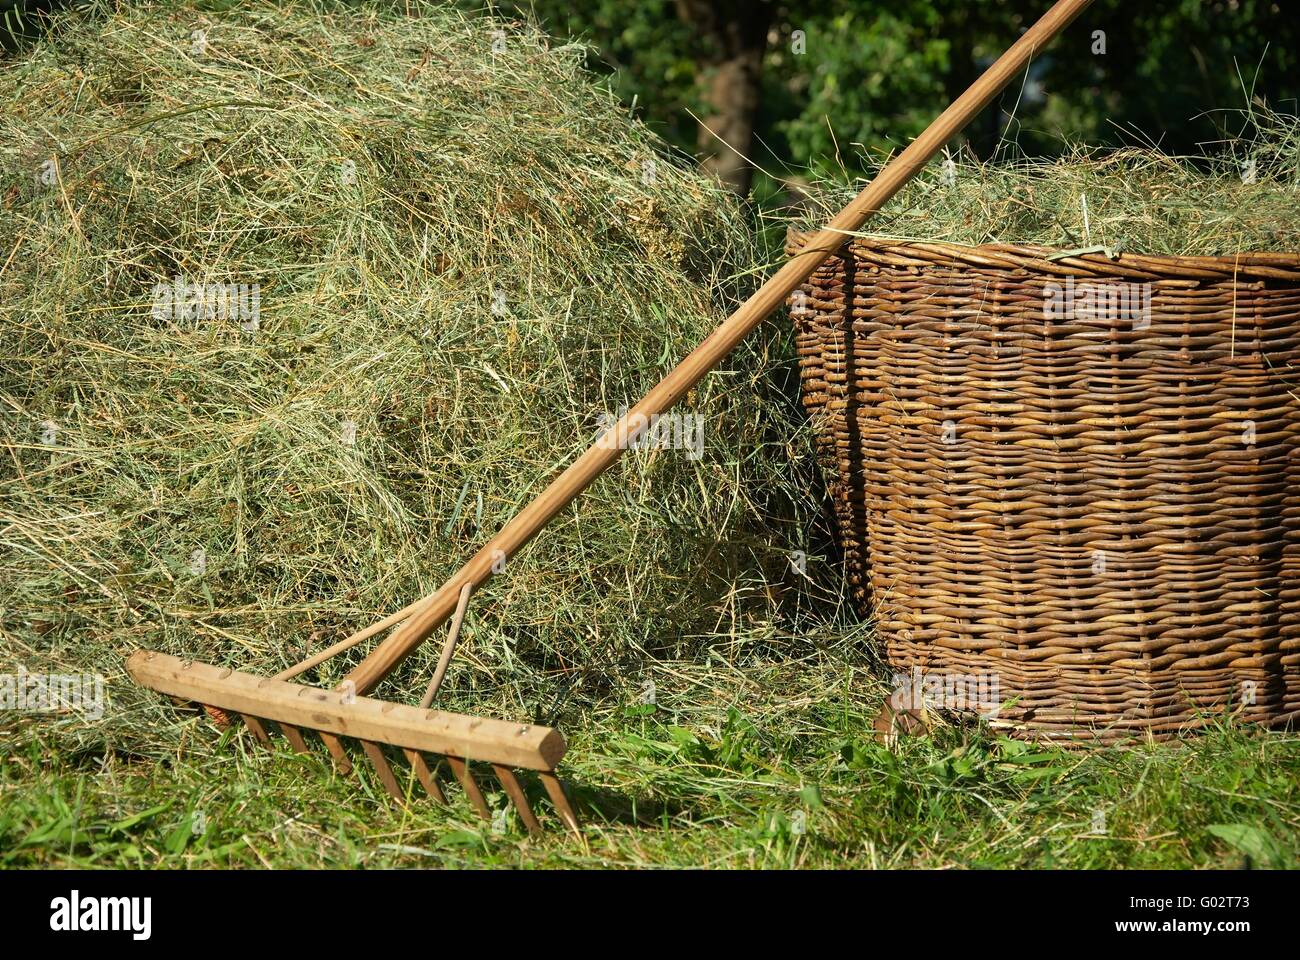 hay harvest Stock Photo